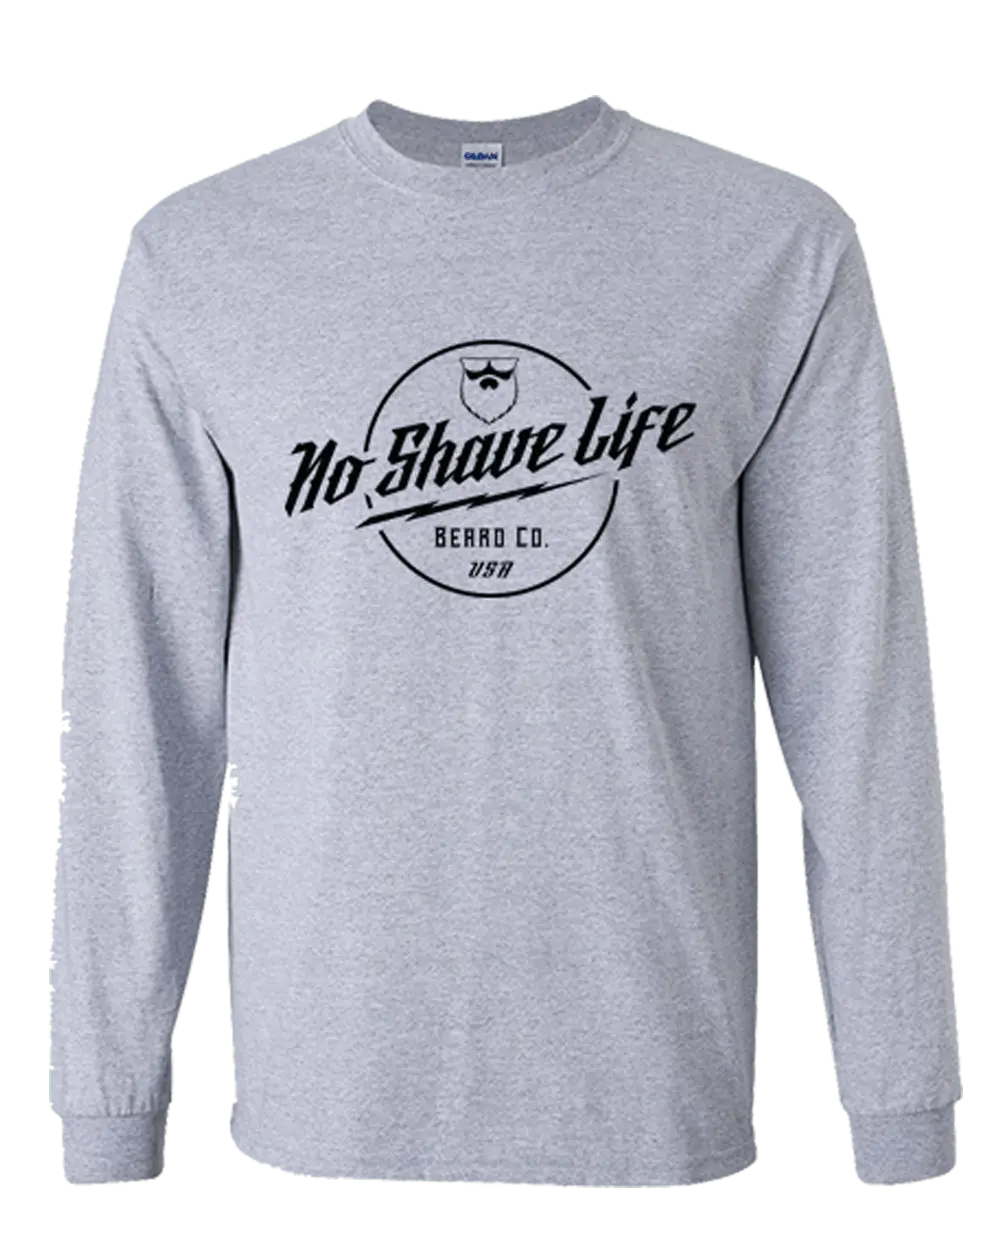 No Shave Life Crate Grey Long Sleeve Shirt|Long Sleeve Shirt